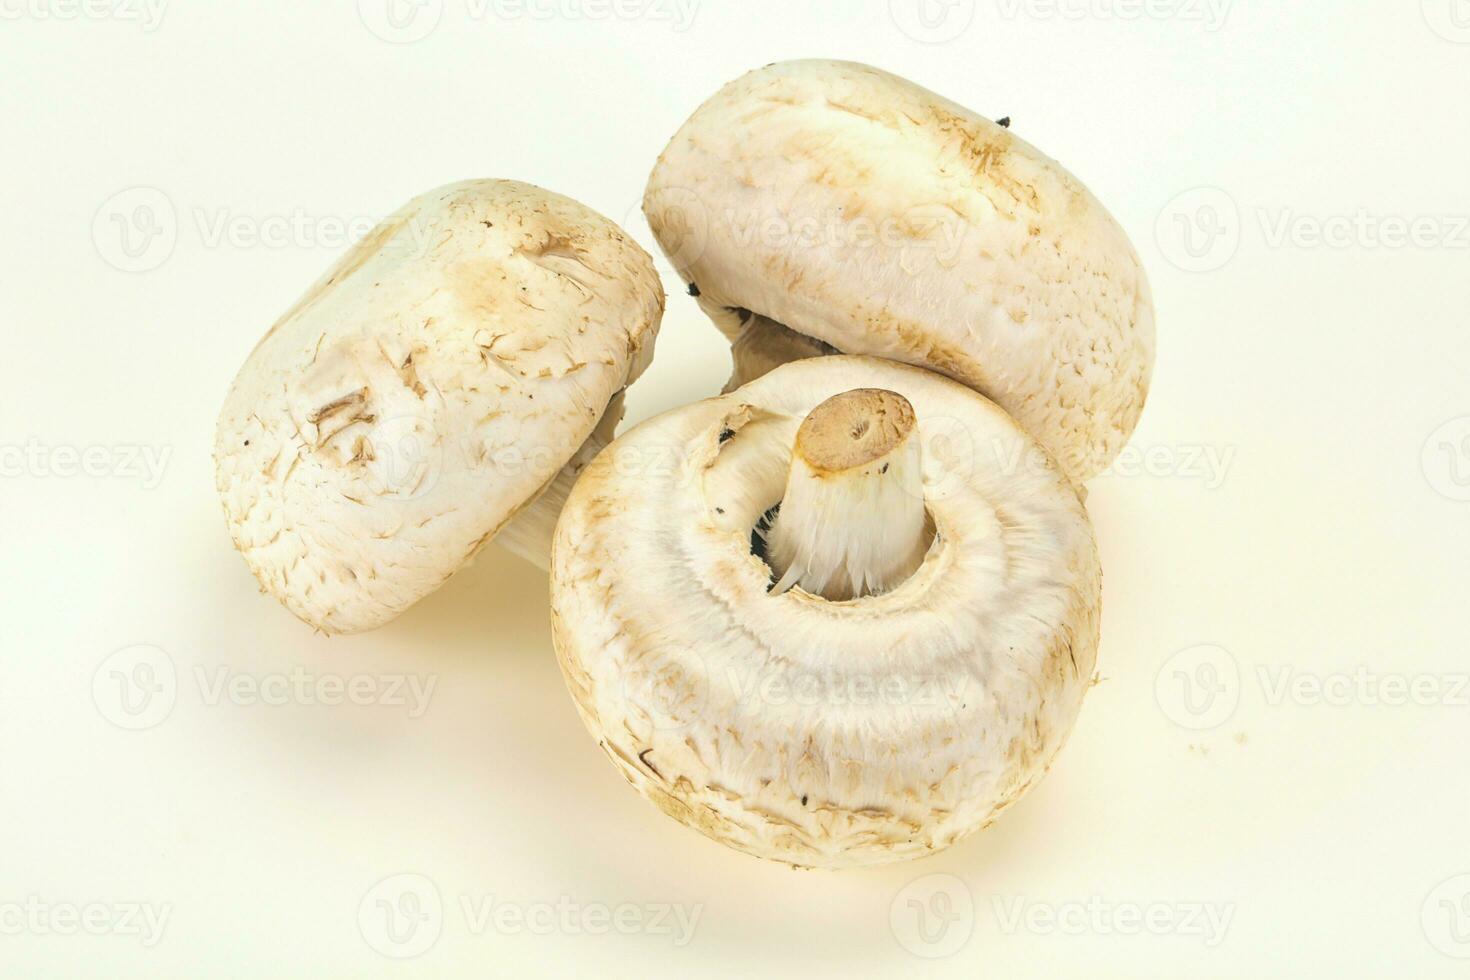 mucchio di champignon crudo per cucinare foto